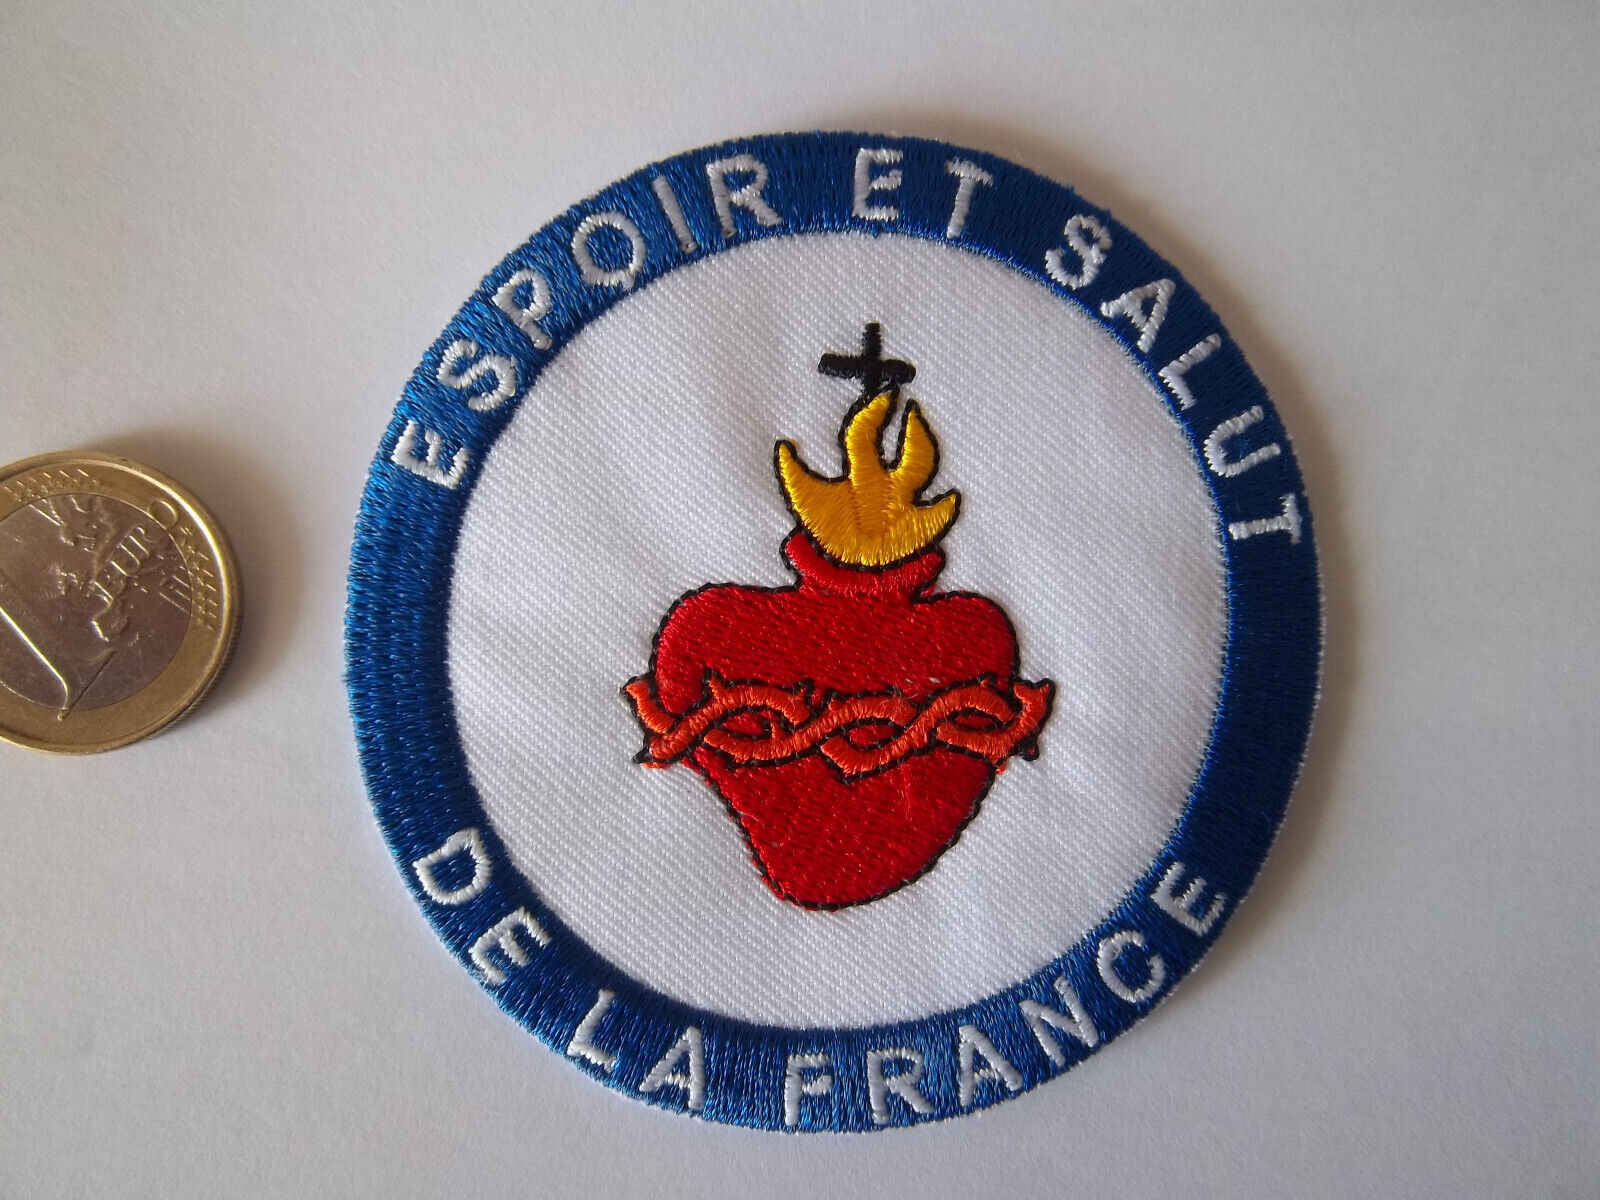 France Sacré-Cœur collection crest hope et salutation